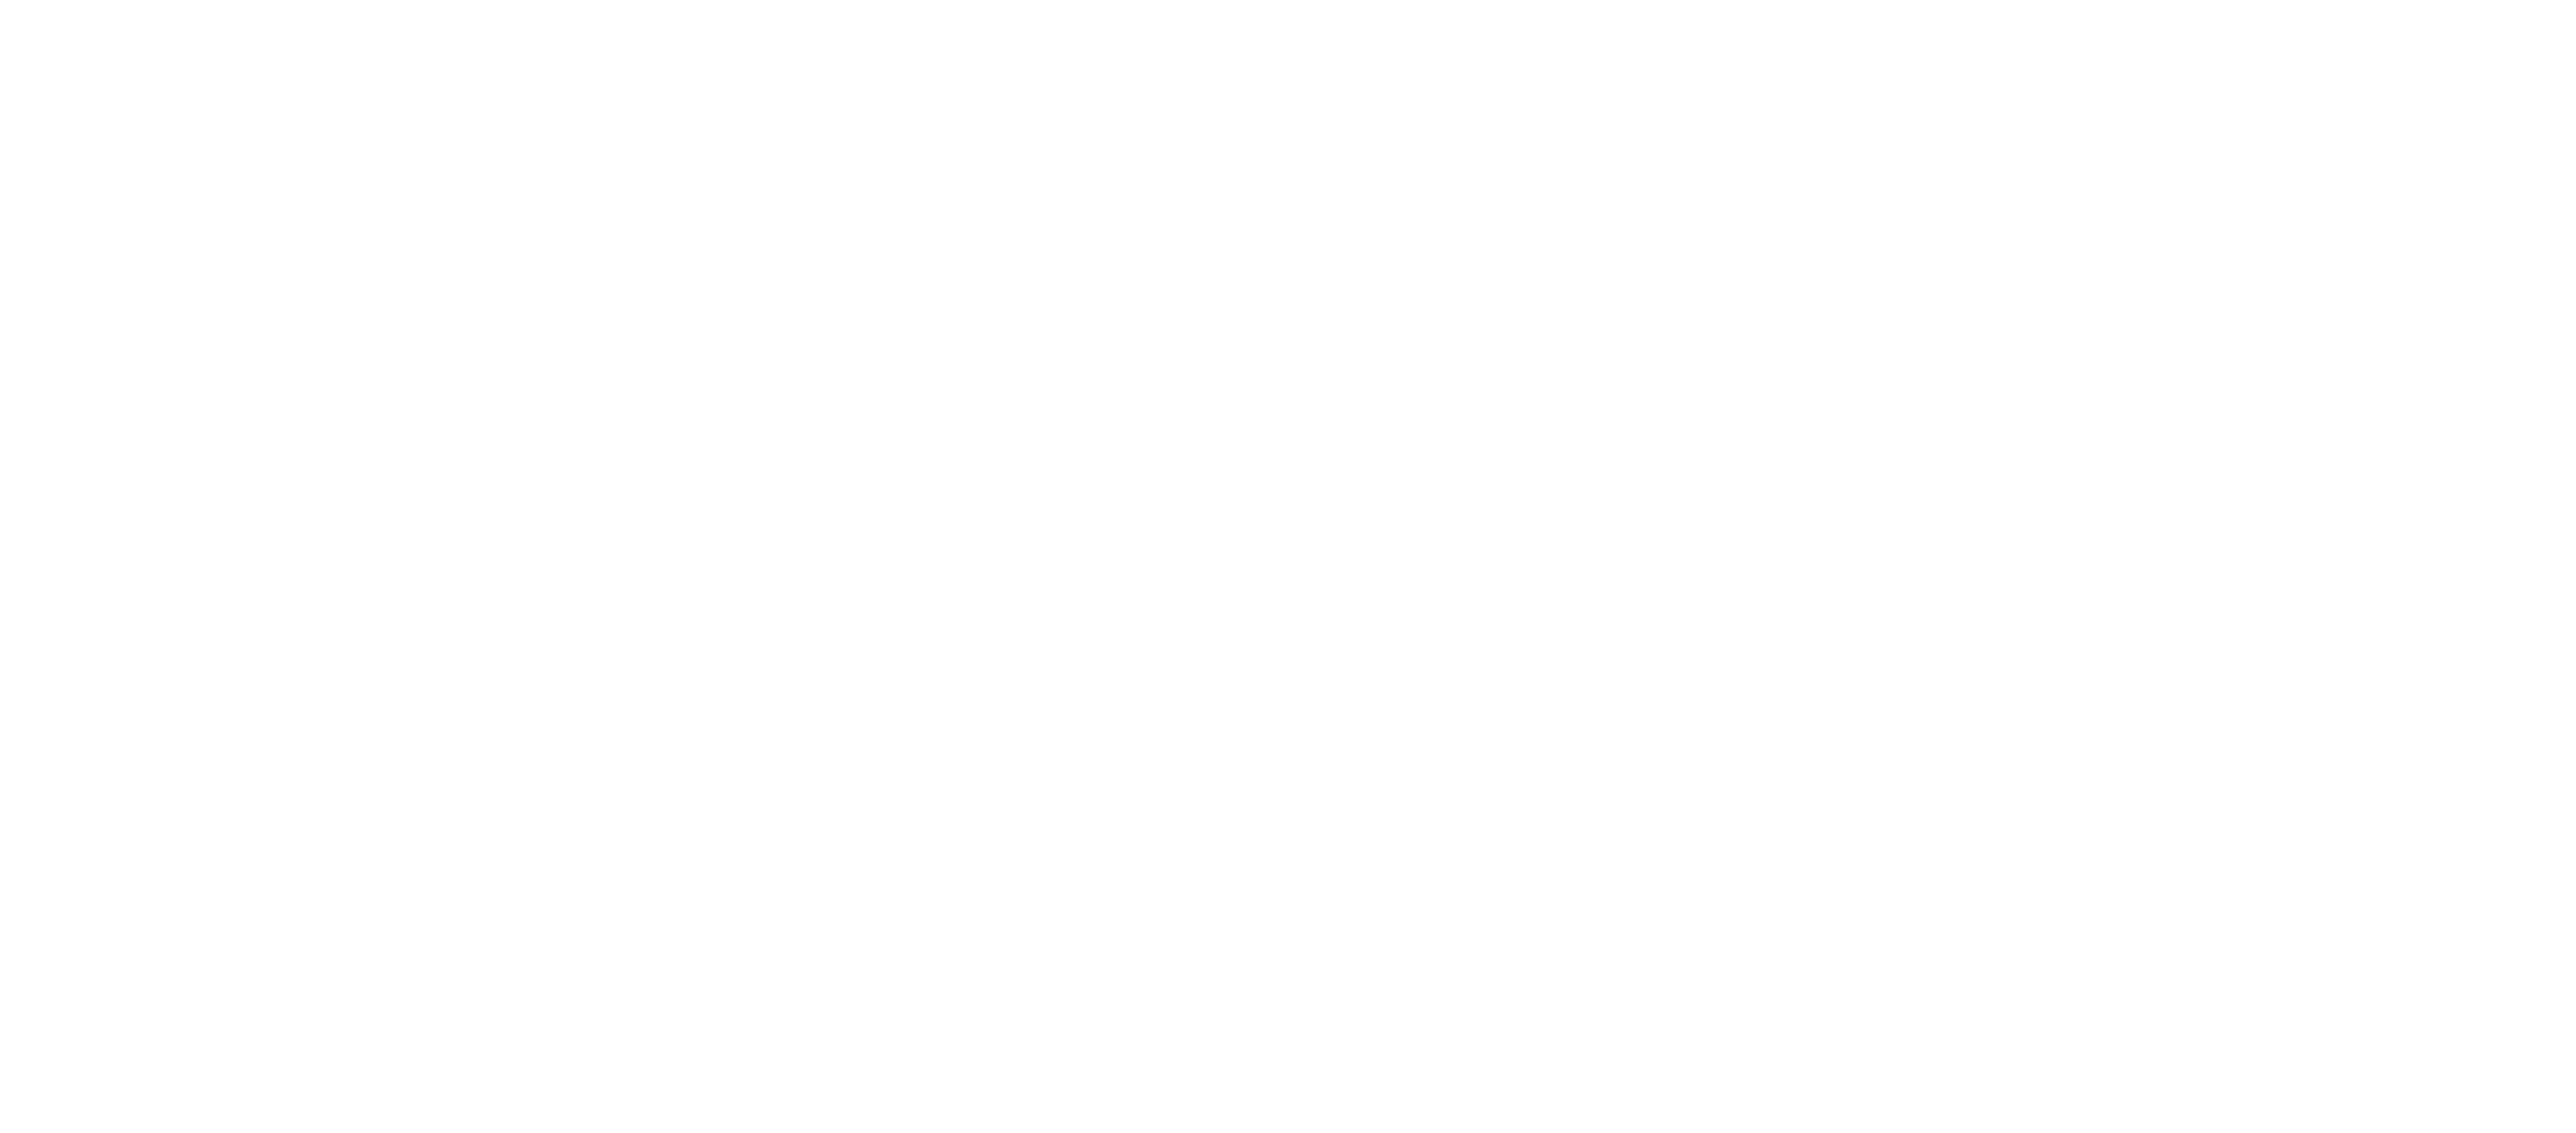 Matador Content logo; a boat rocker company